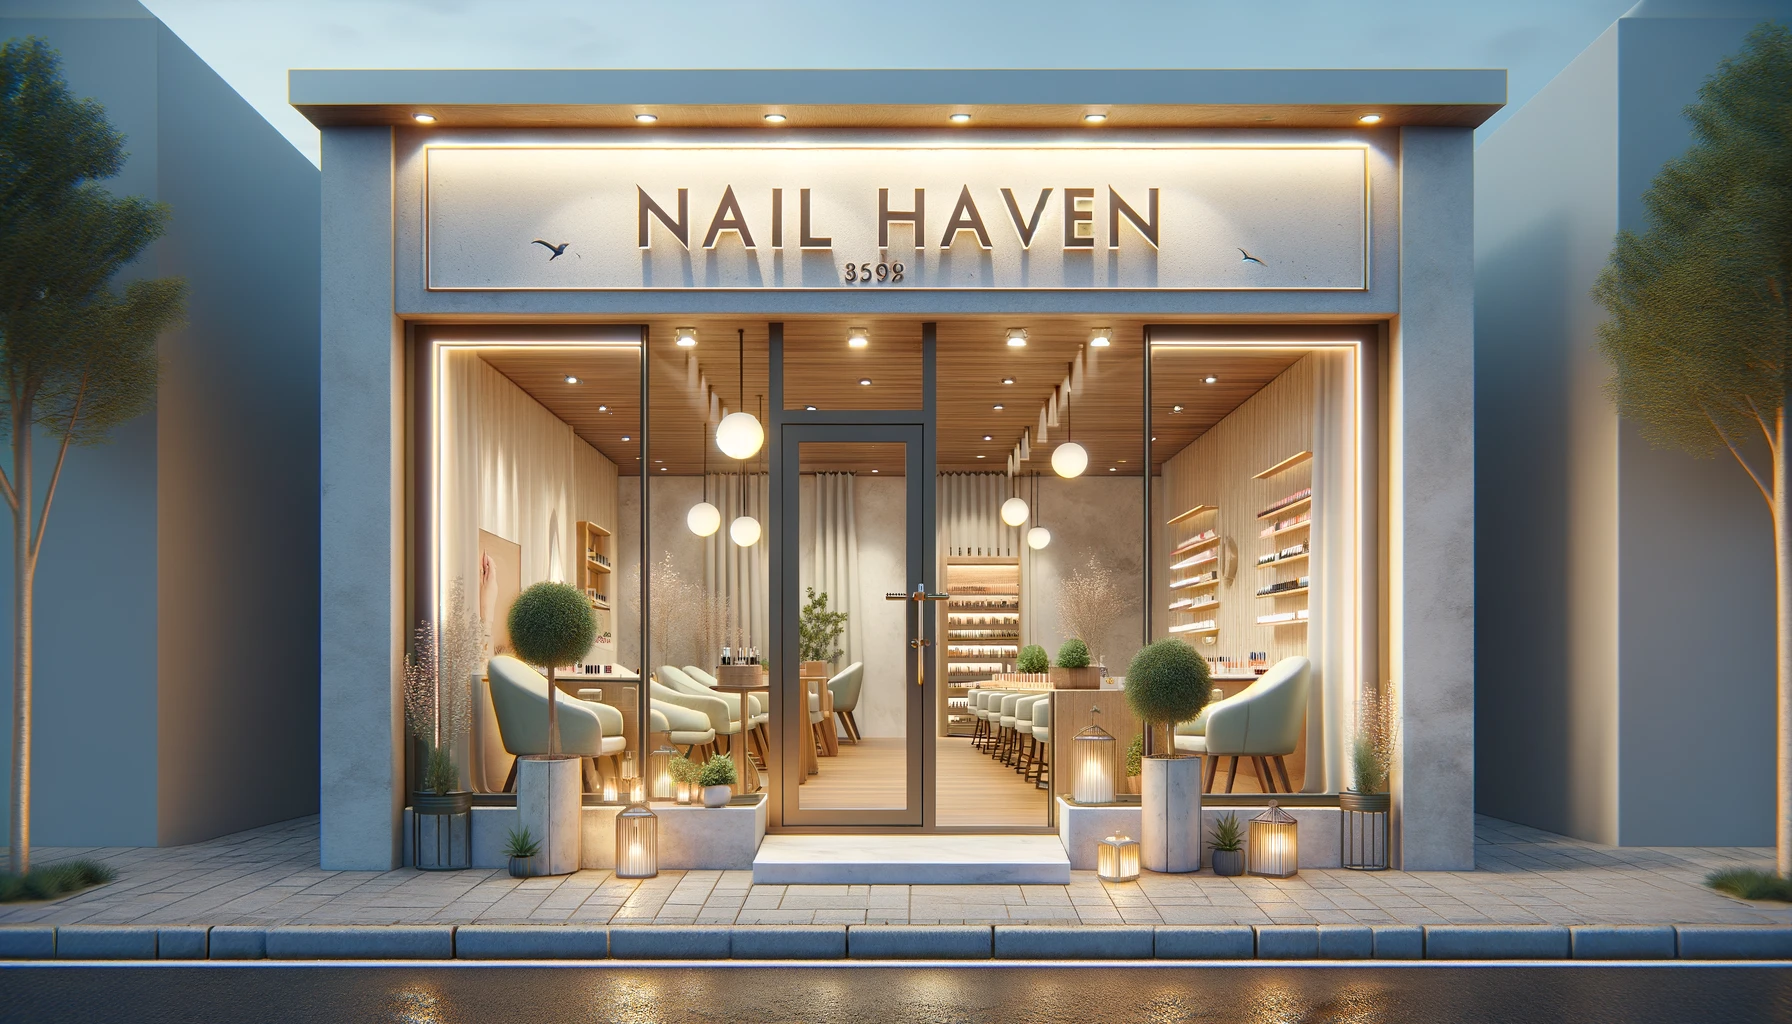 nail salon shopfront design ideas